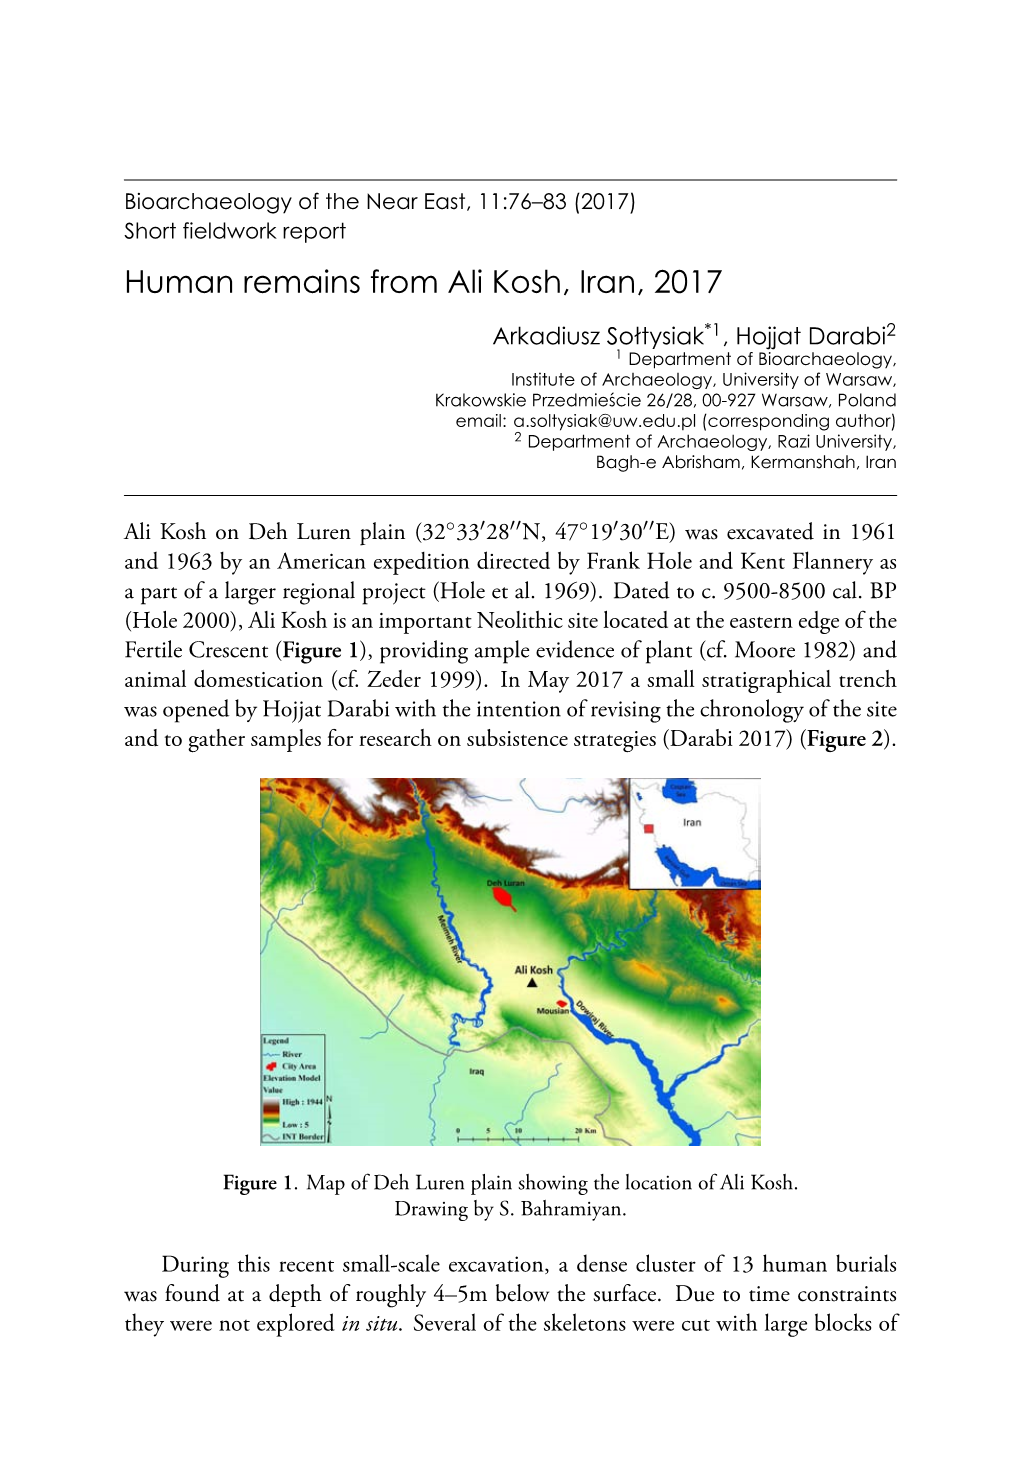 Short Fieldwork Report. Human Remains from Ali Kosh, Iran, 2017